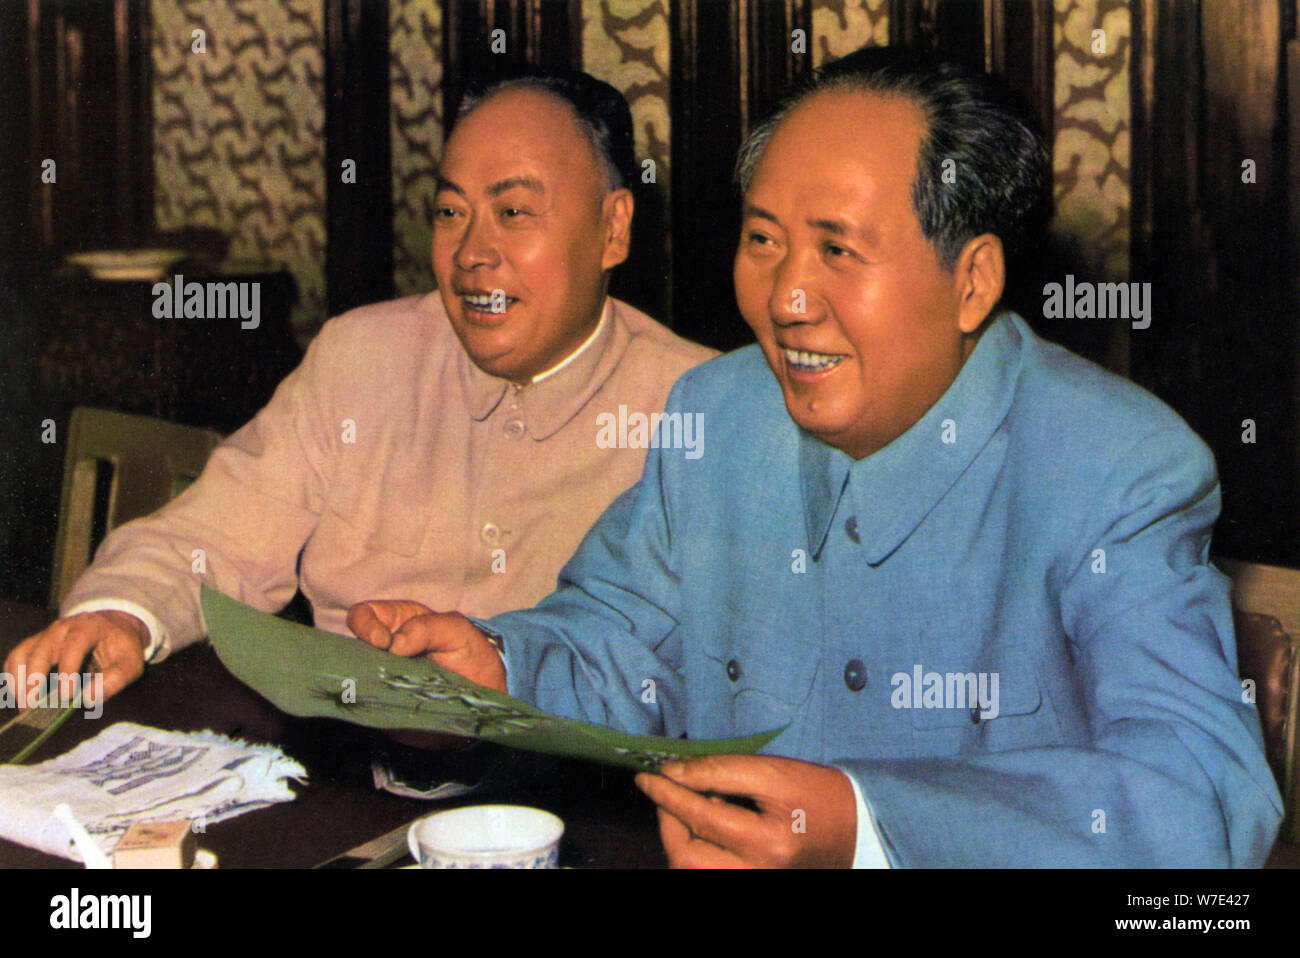 Mao Zedong et Chen Yi, les dirigeants communistes chinois, c1960s( ?). Artiste : Inconnu Banque D'Images